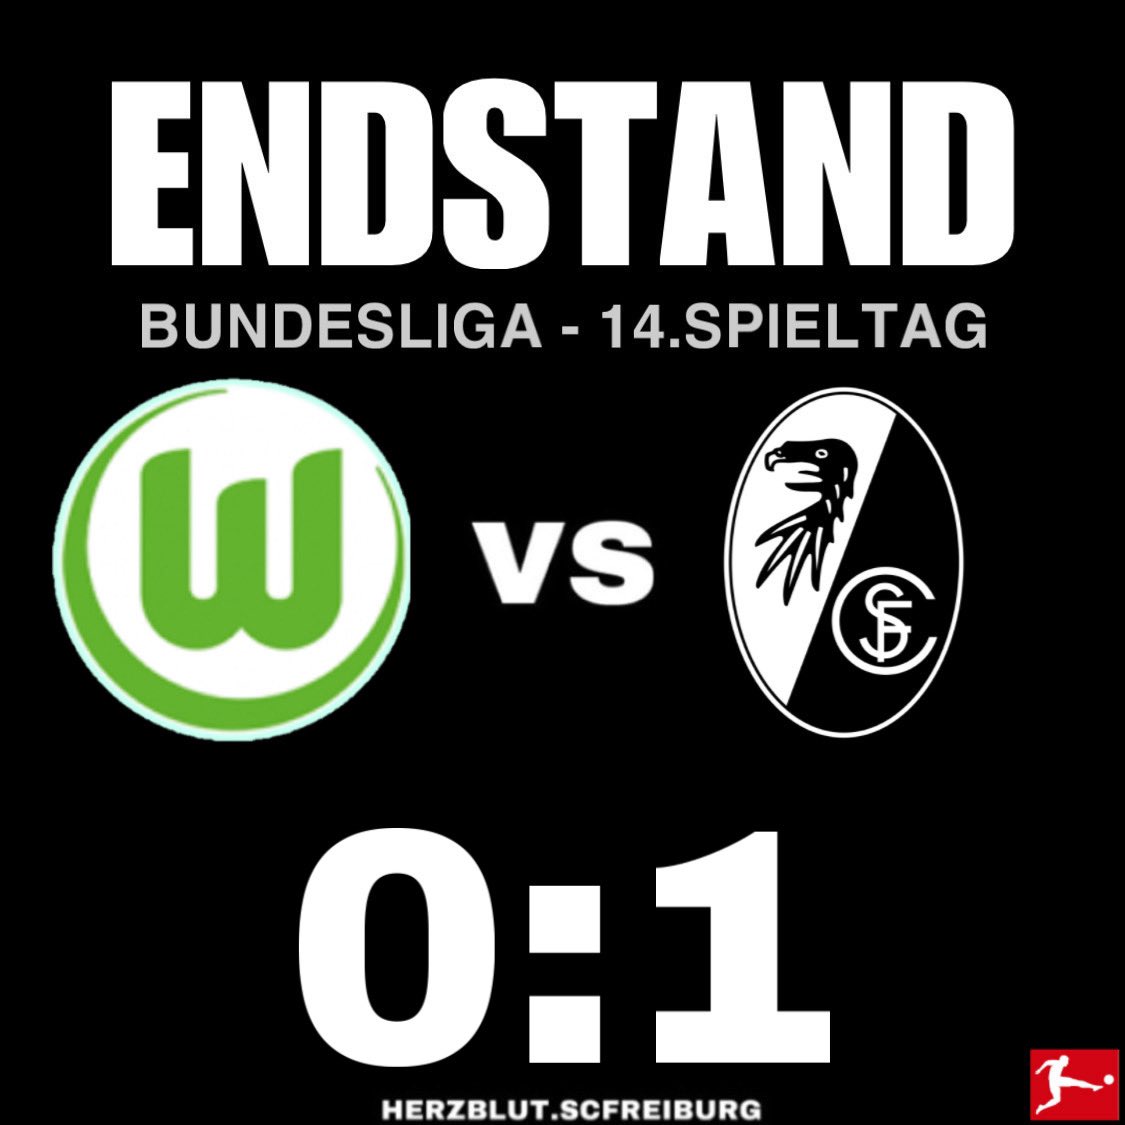 AUS-WÄRTS-SIIIIIIEG!!YES!!🔥🙌🤩🤍❤️ #wobscf #scf #scfreiburg #freiburg #nurderscf #fussball #bundesliga